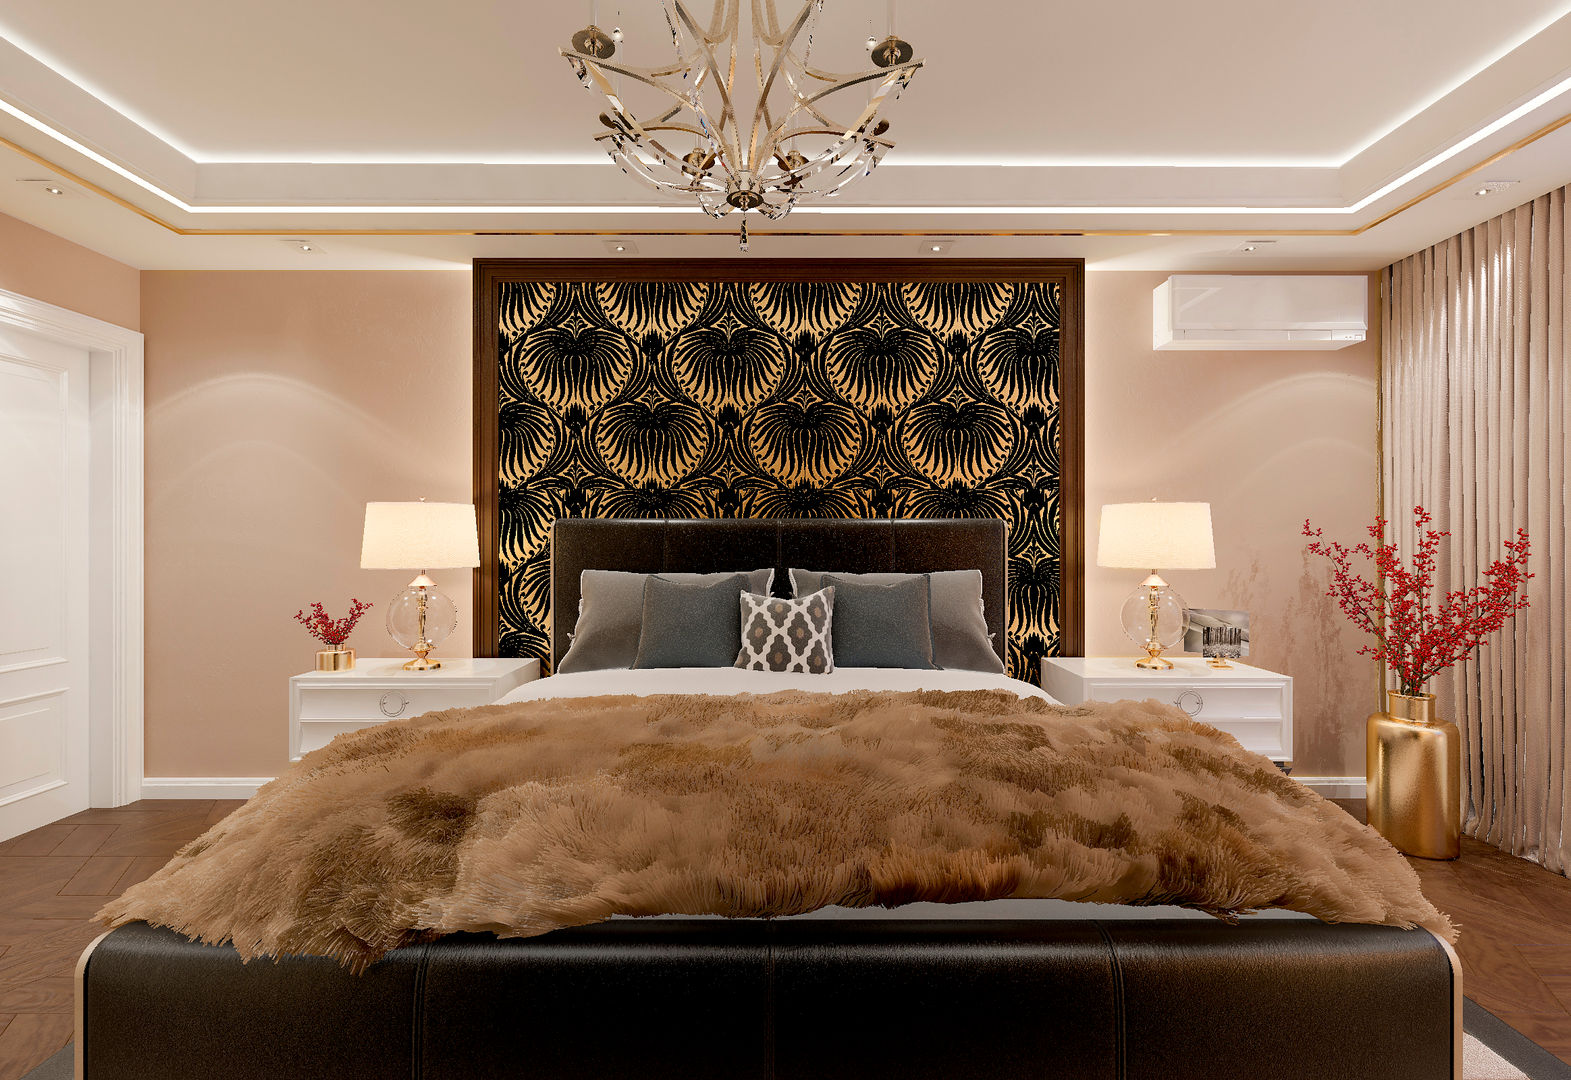 Спальня "Gold & fur", Студия дизайна Дарьи Одарюк Студия дизайна Дарьи Одарюк Dormitorios clásicos